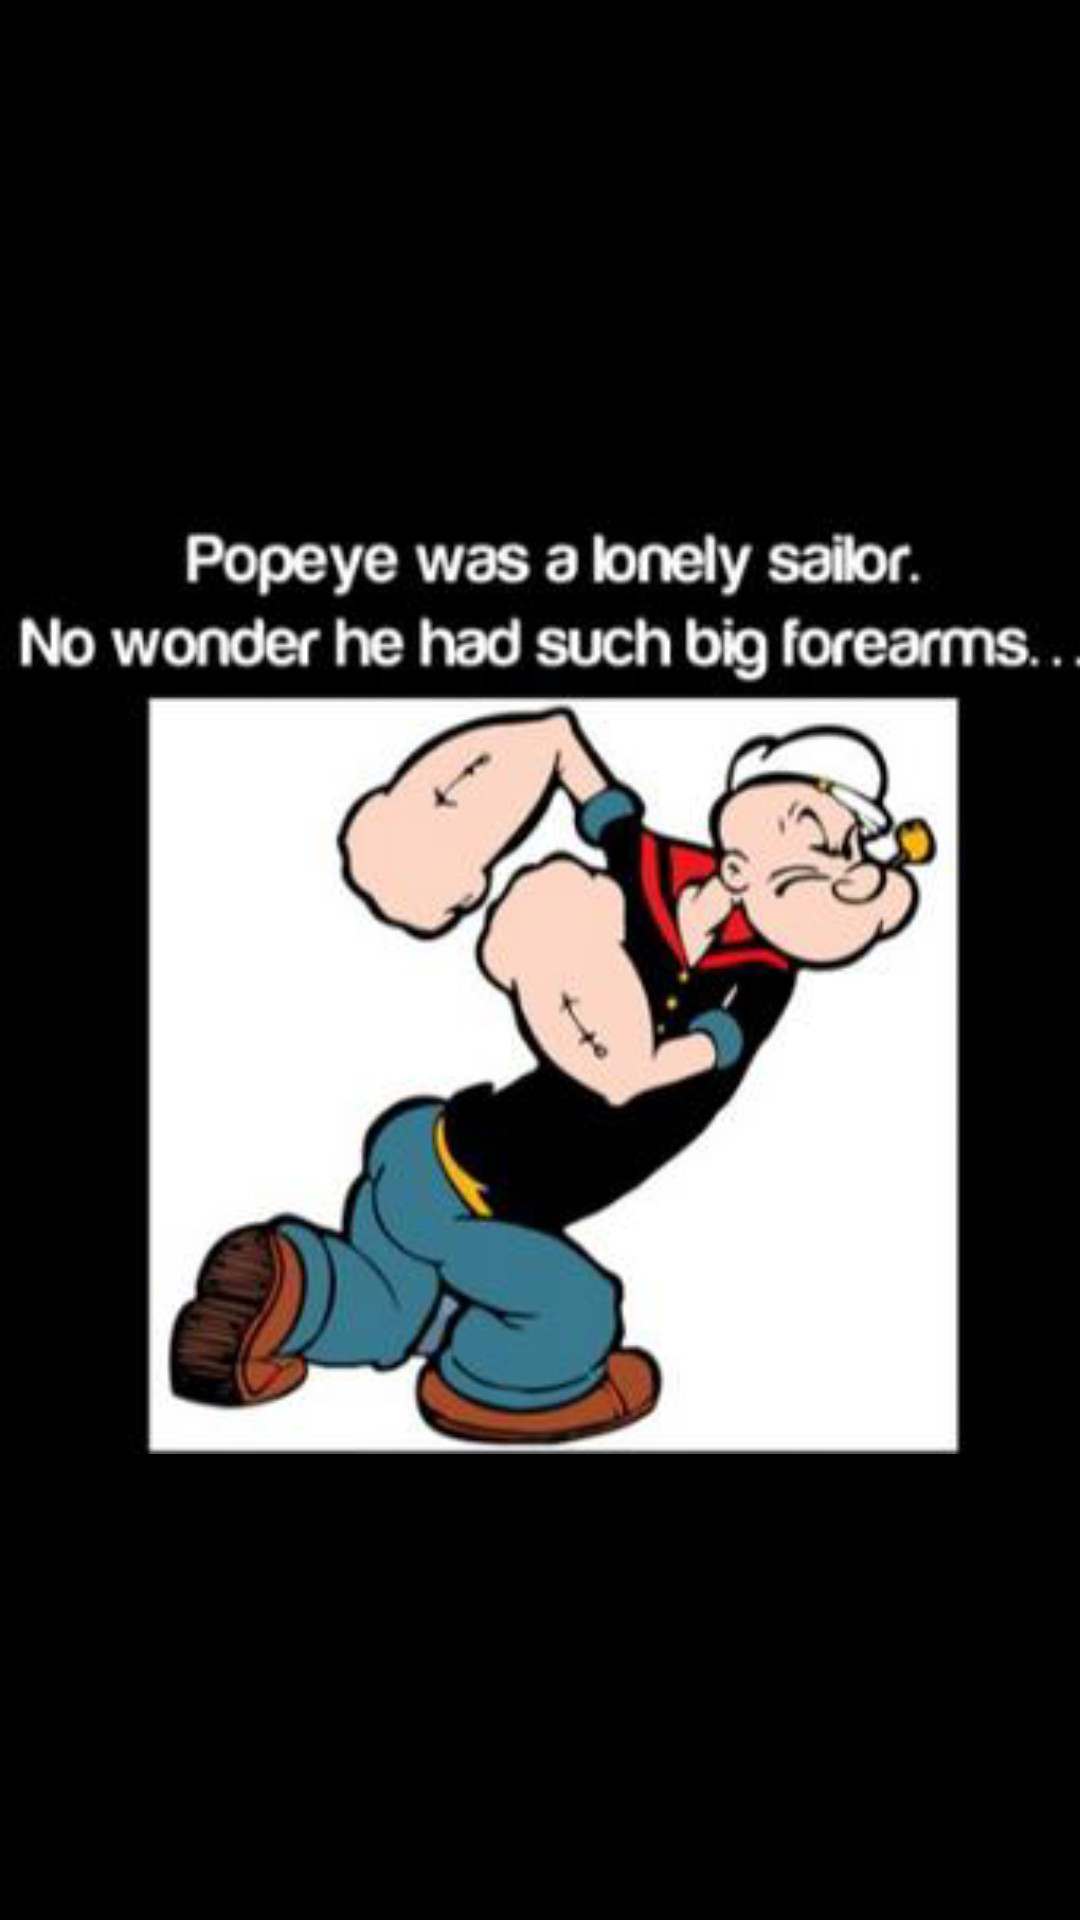 Poor popeye  :'( - meme